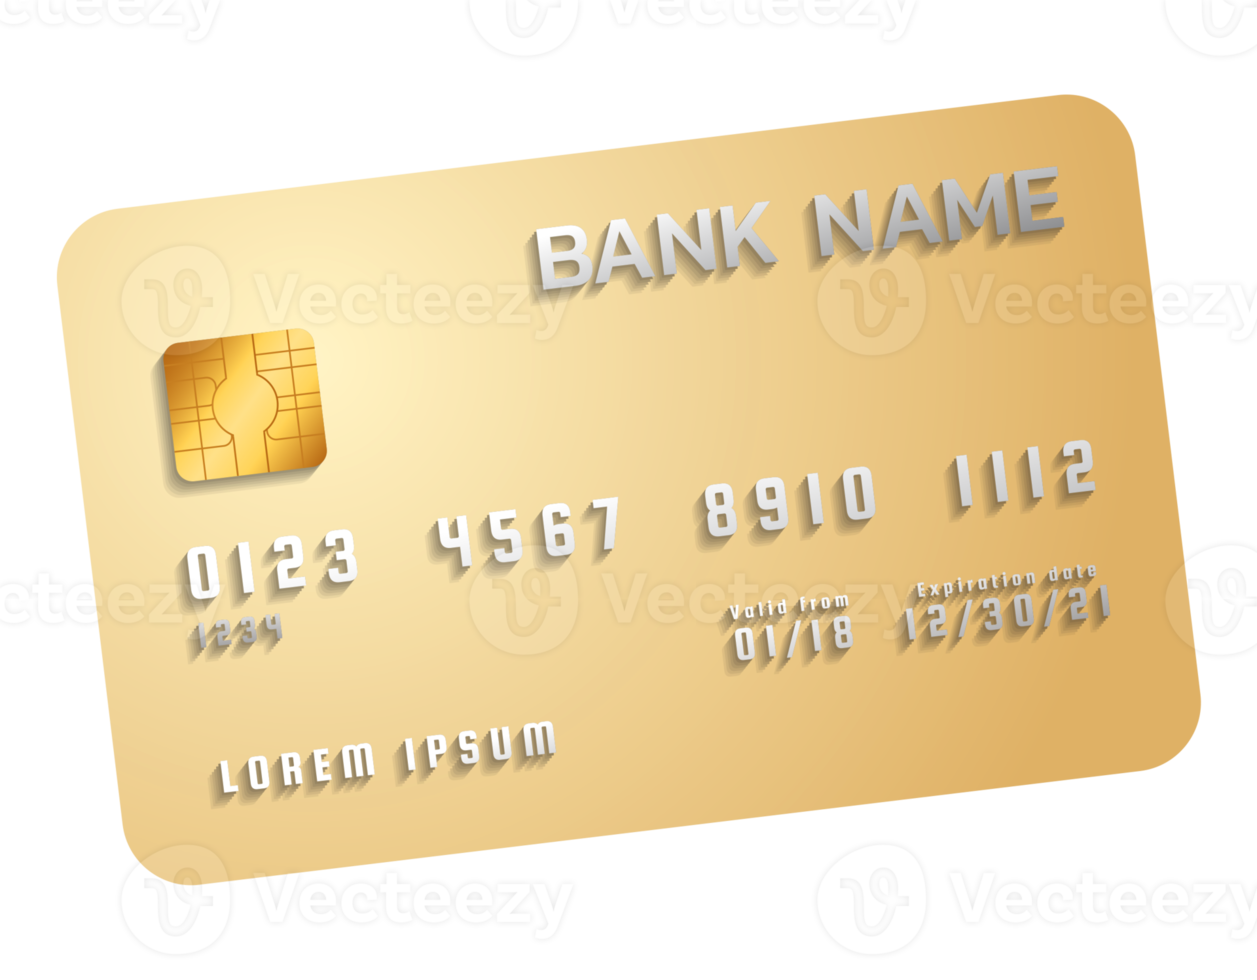 Credit card transparent background png